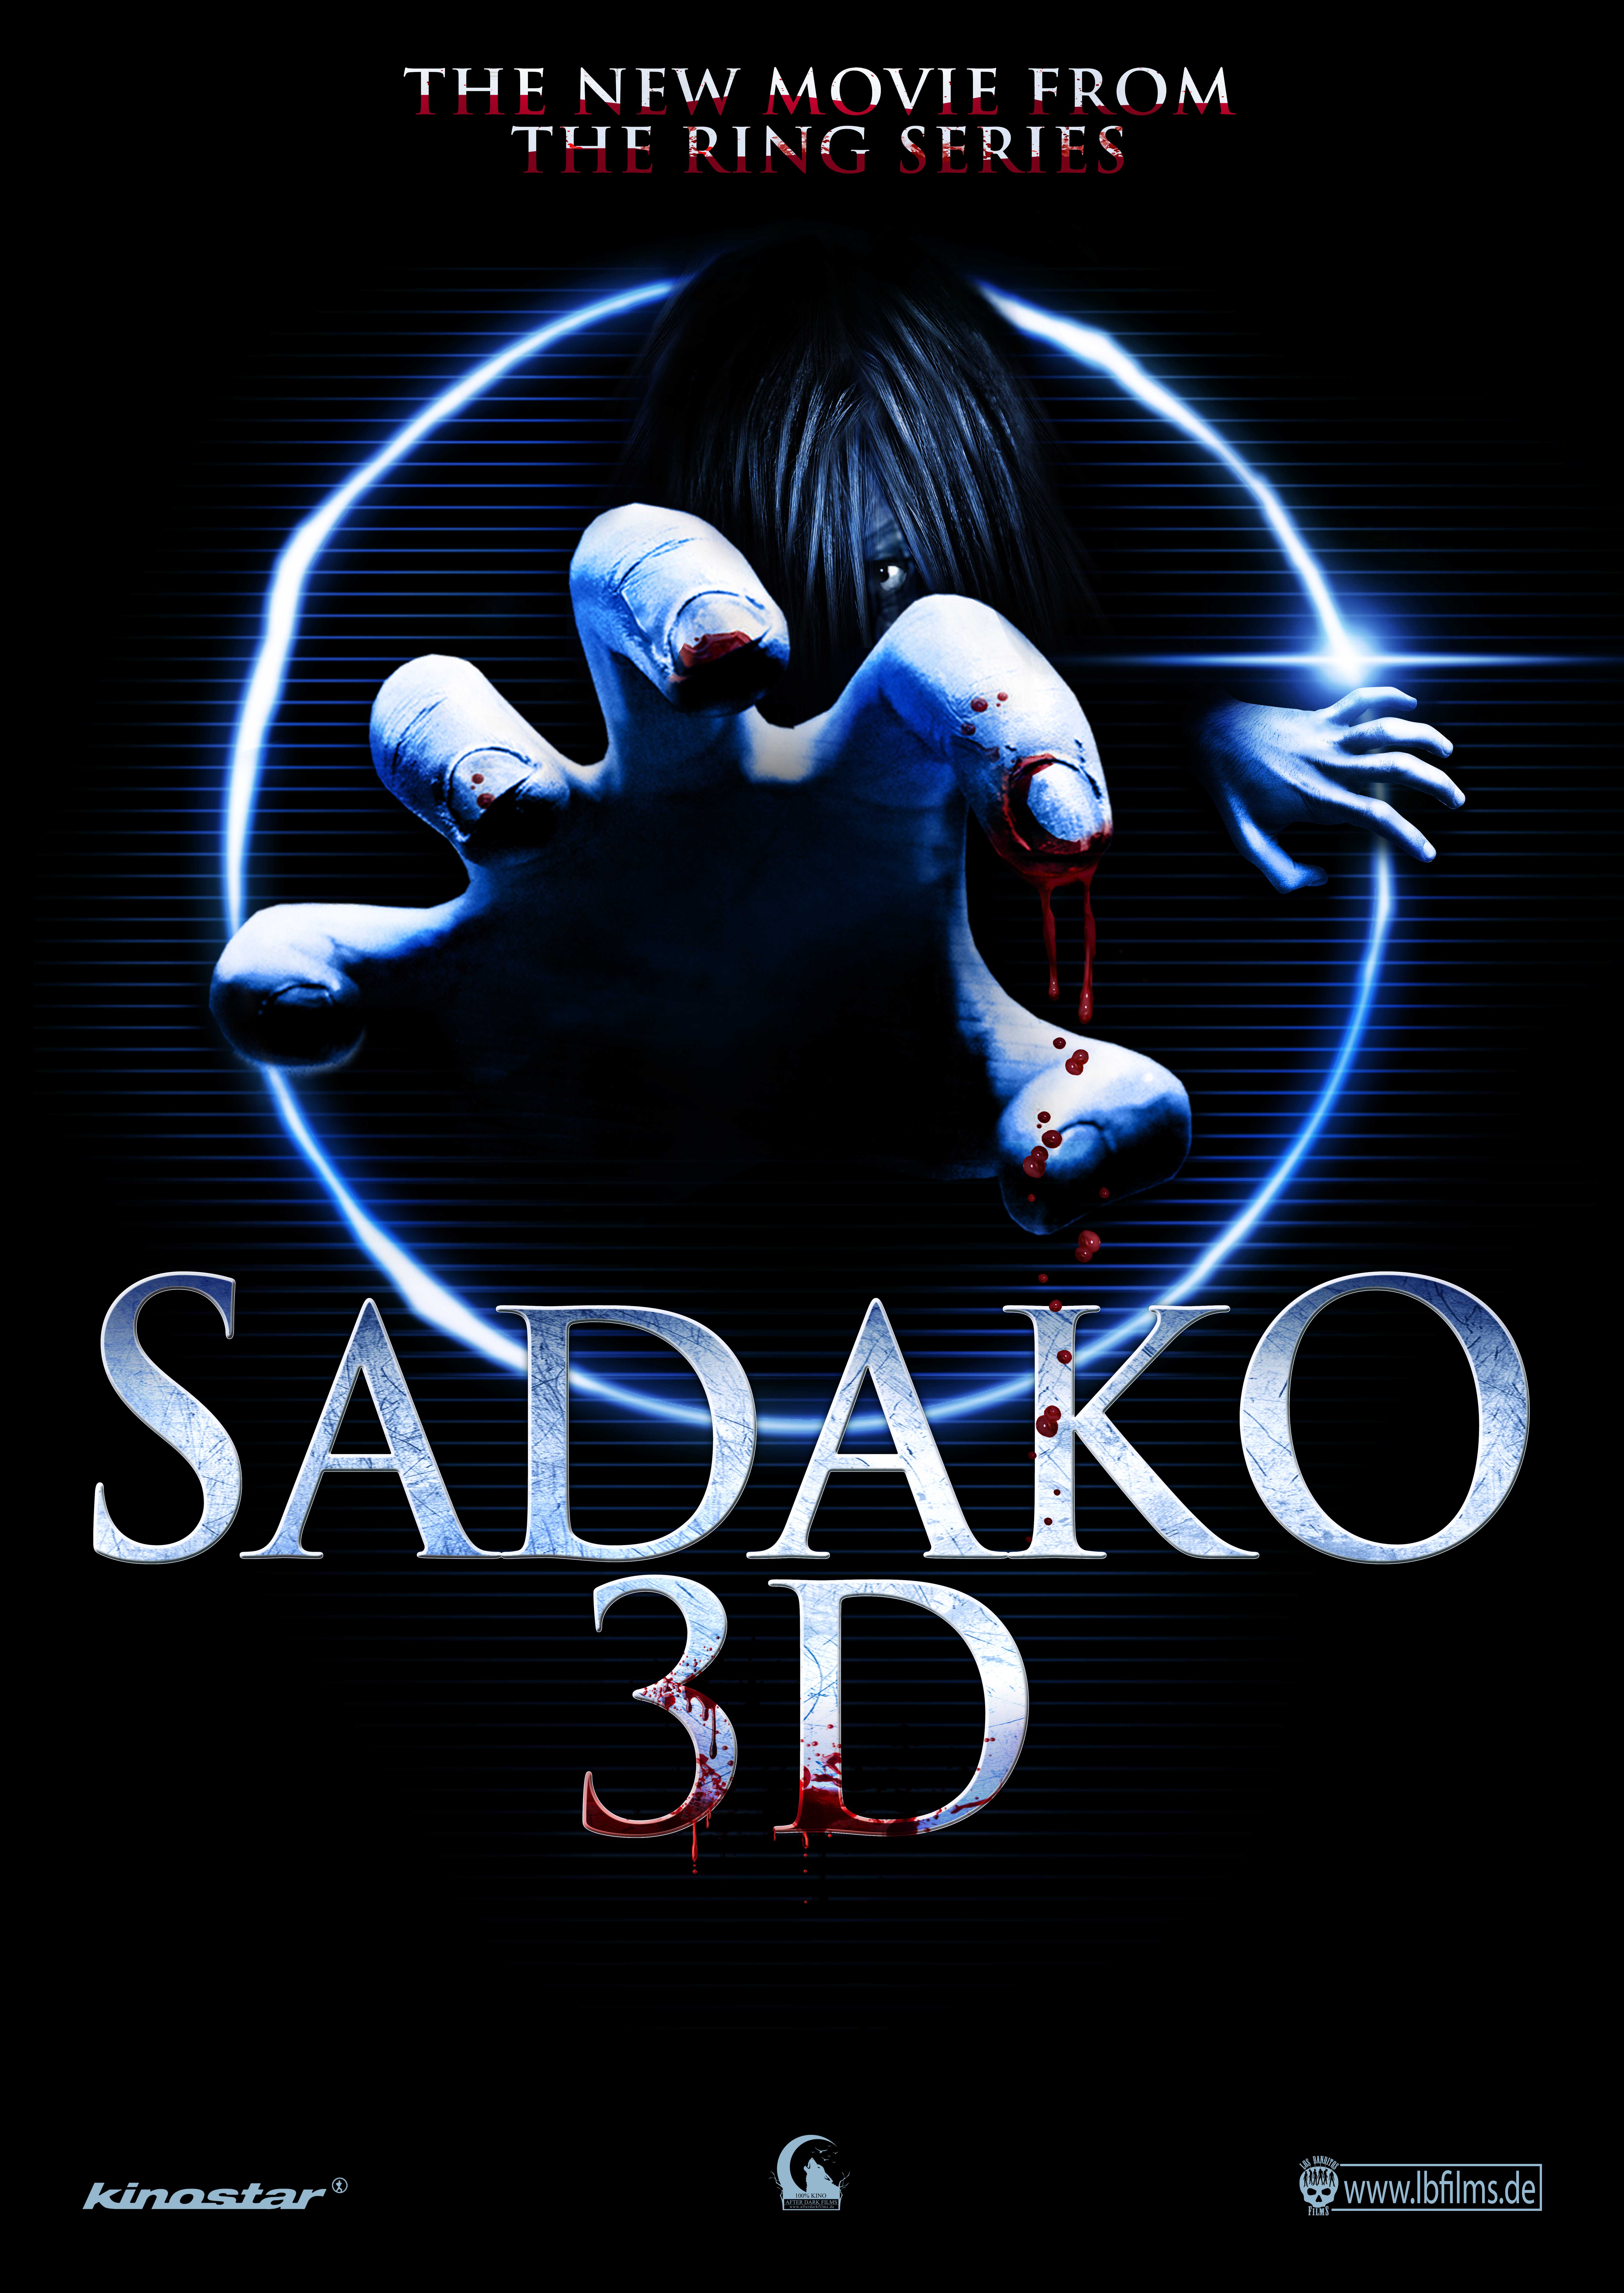 Sadako 3D in cinemas now!